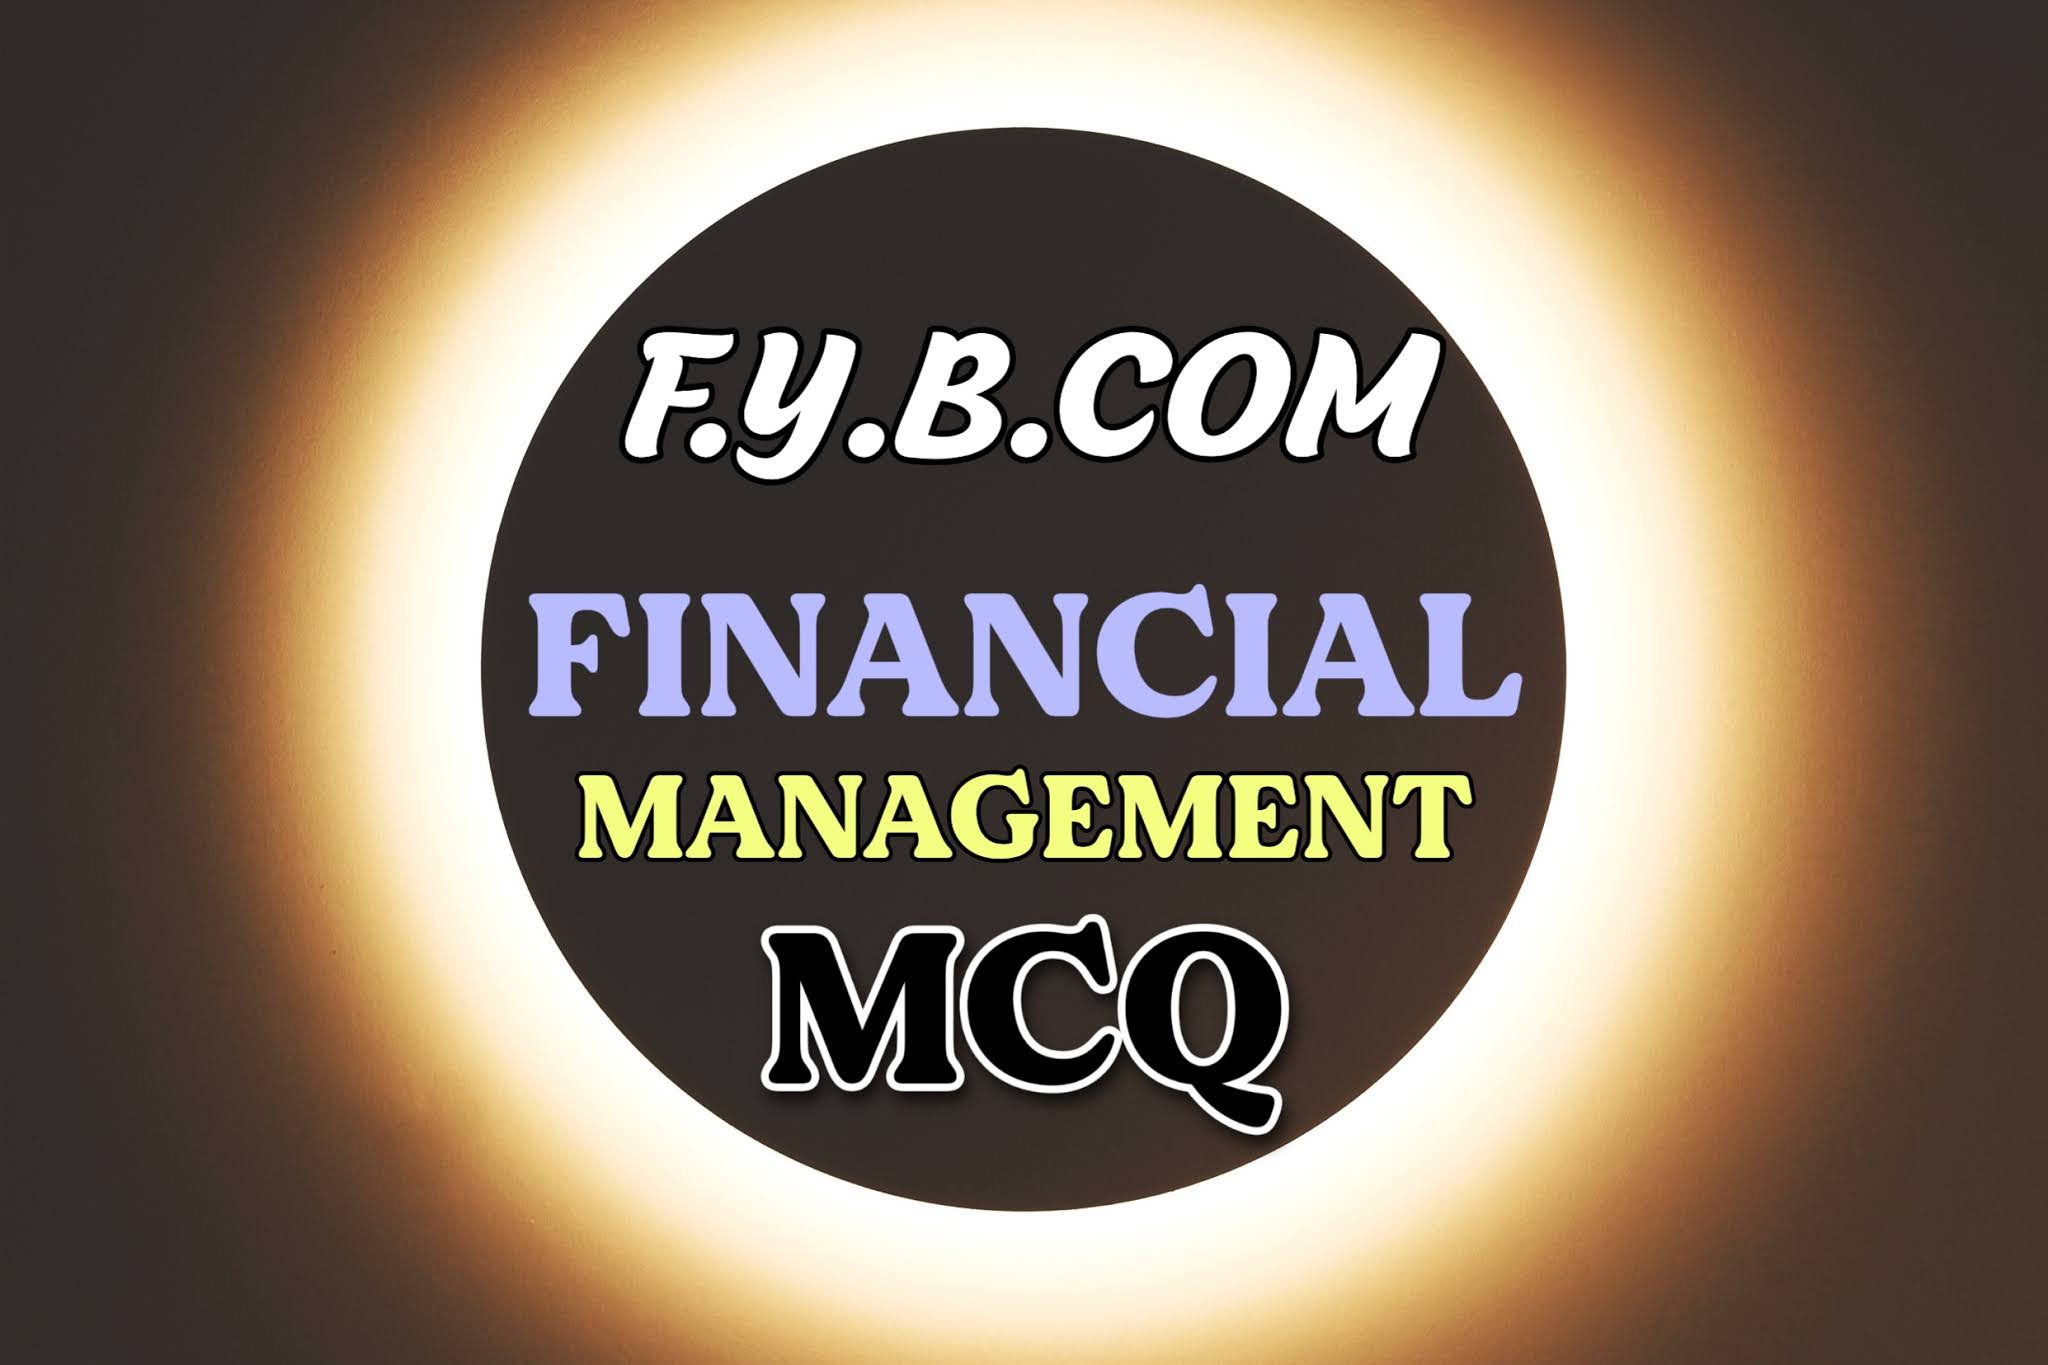 FINANCIAL MANAGEMENT F.Y.B.COM